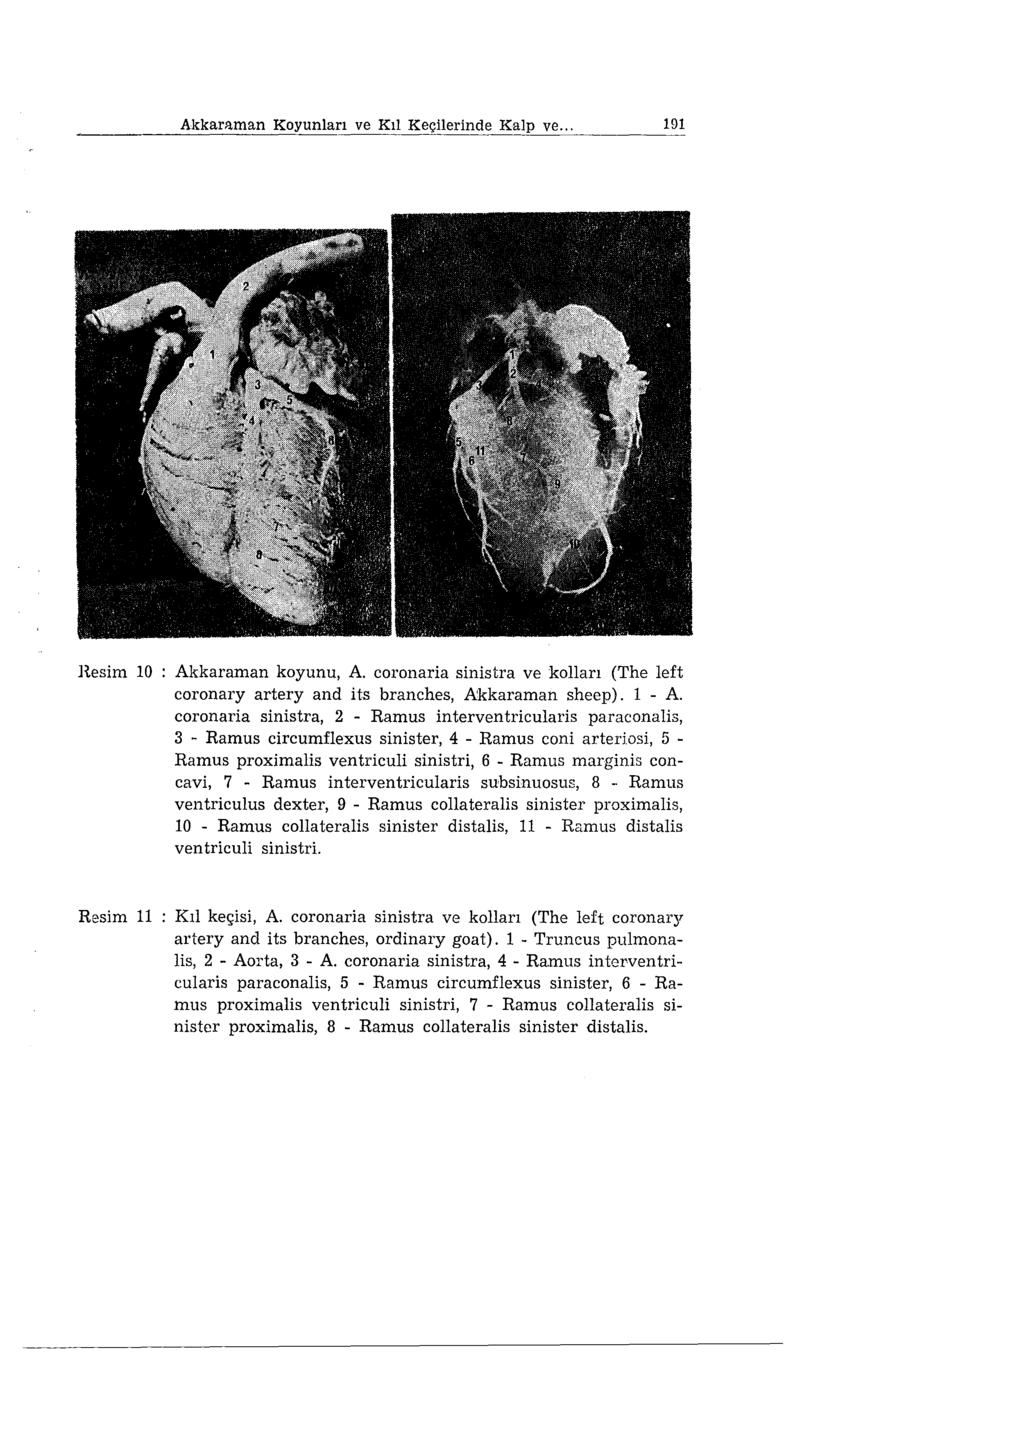 Akkarııman Koyunları ve Kıl Keçilerinde Kalp ve... 191 H.esim 10 Akkaraman koyunu, A. coronaria sinistra ve kolları (The left coronary artery and i ts branches,.a:kkaraman sheep). ı - A.